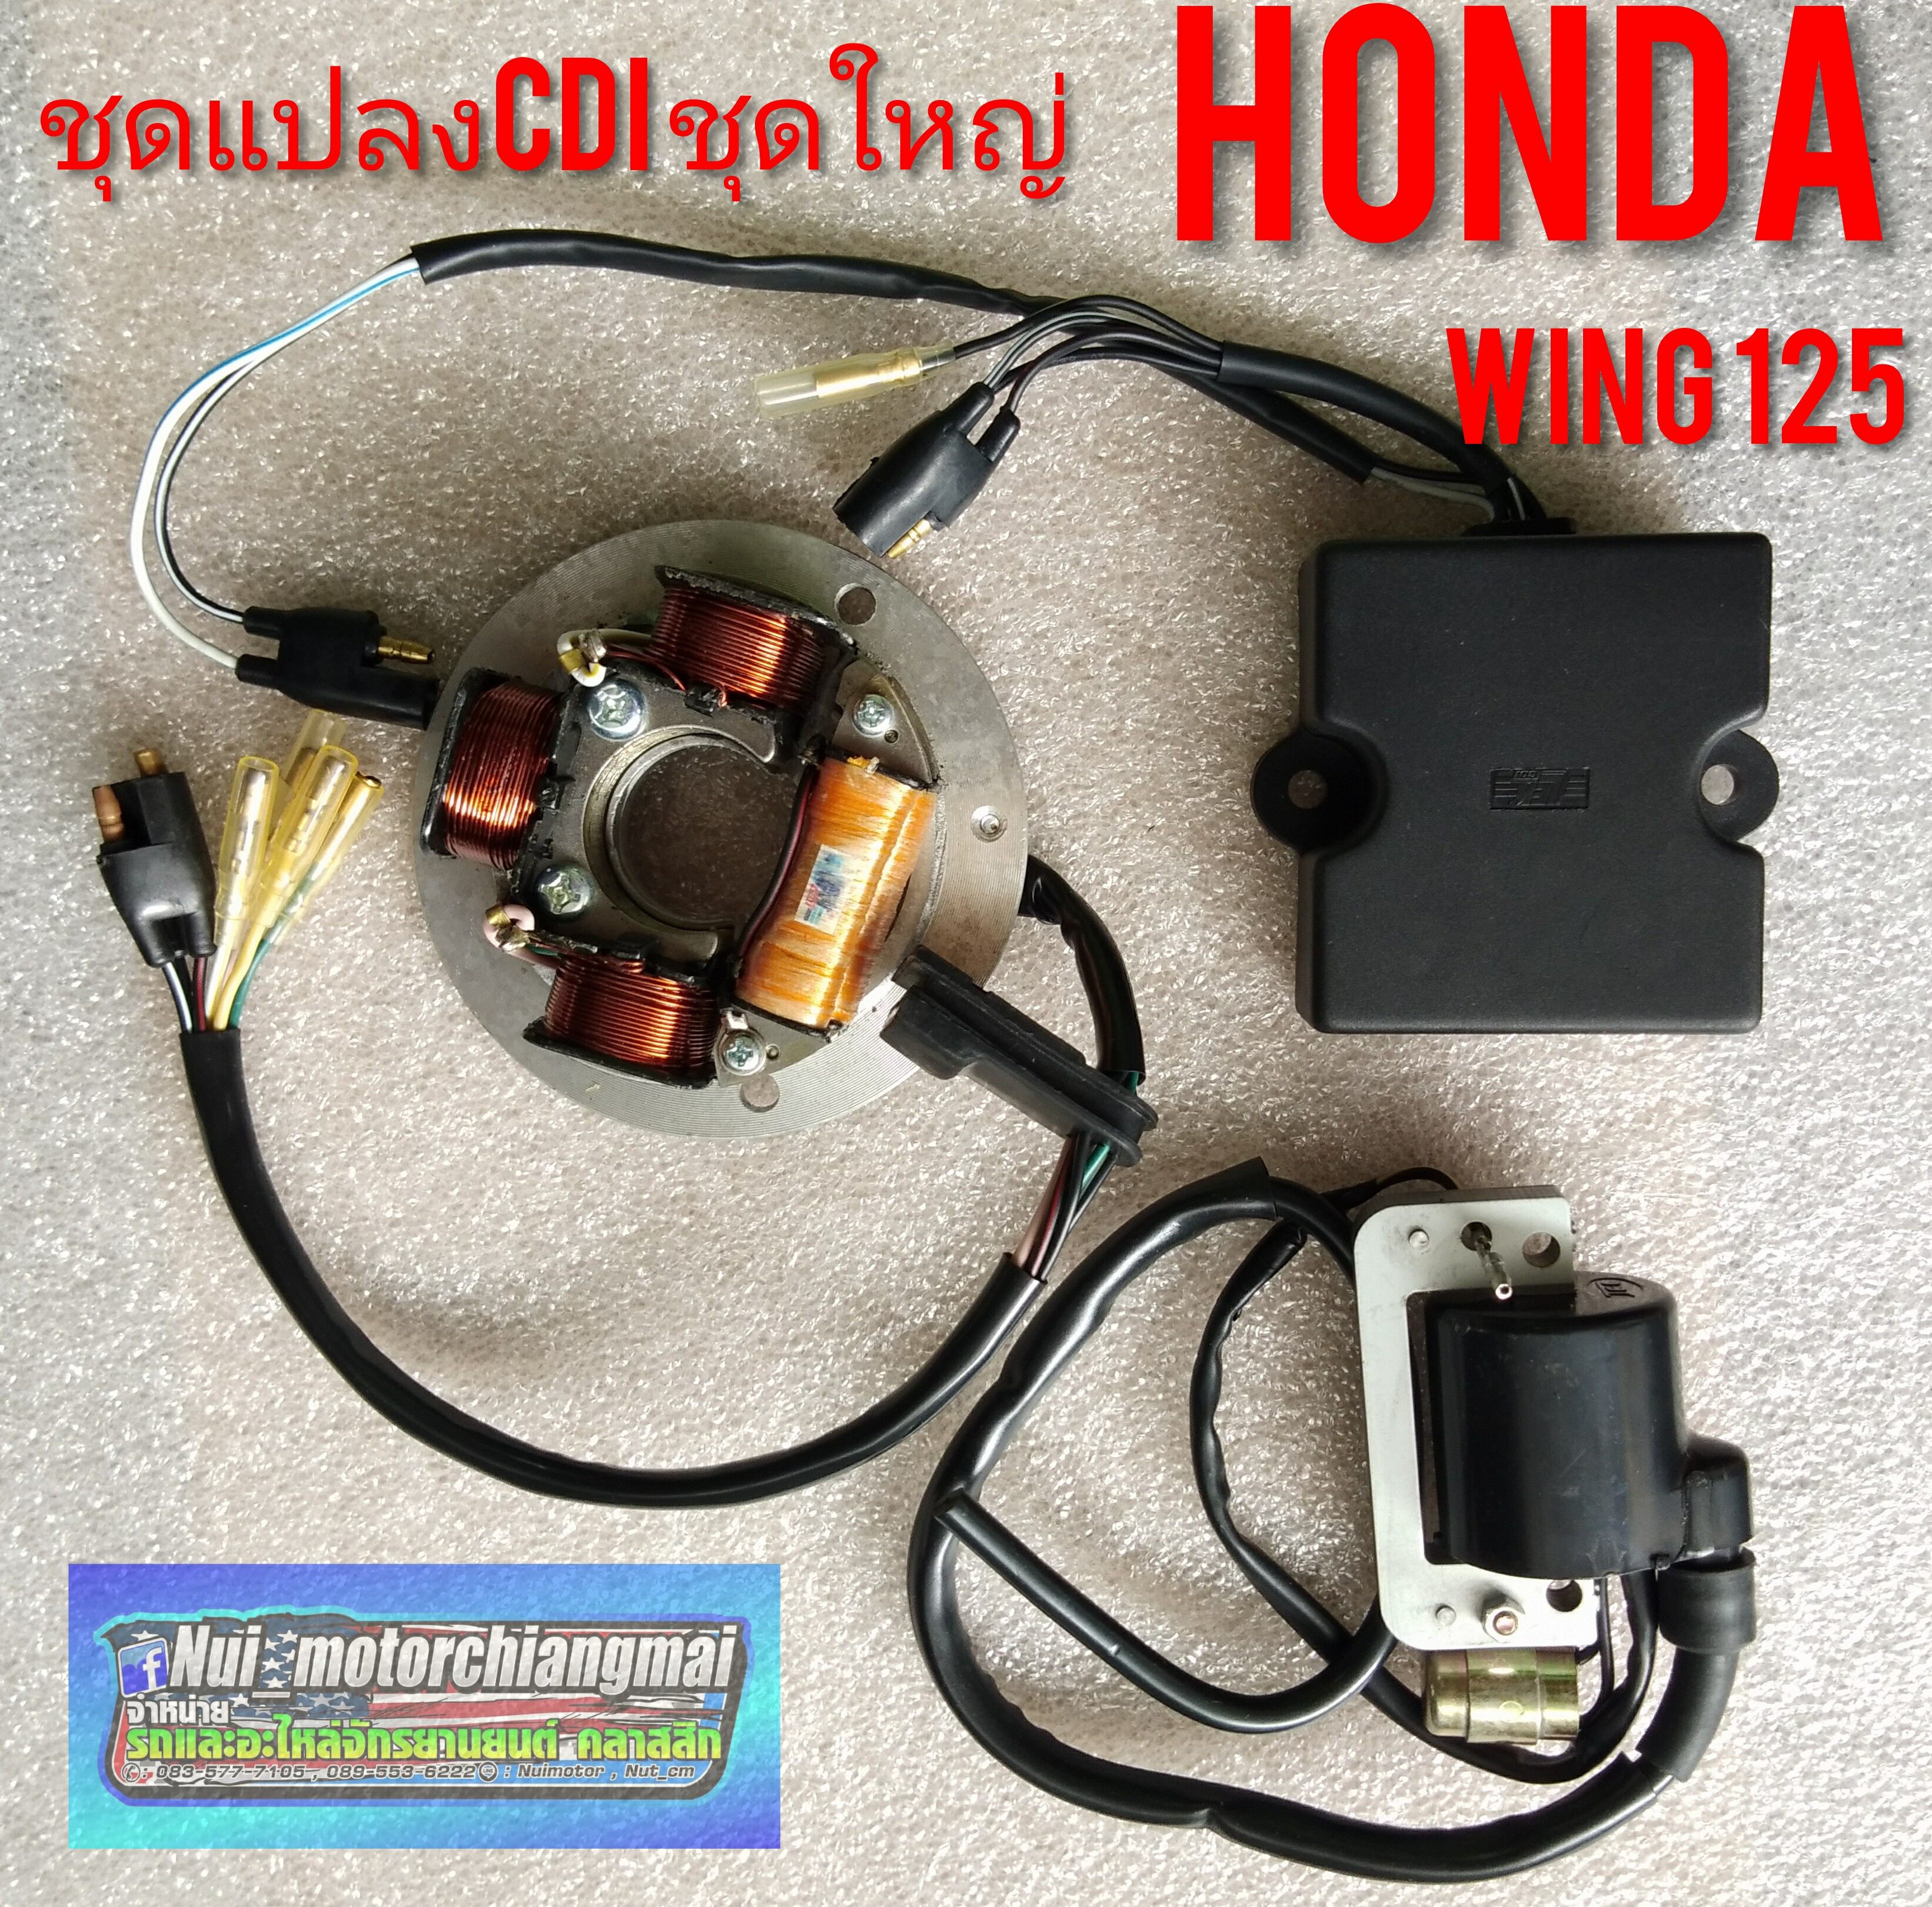 ฟิลล์คอยล์ cdi wing125/ชุดแปลงcdi Honda wing/ Honda wing 125